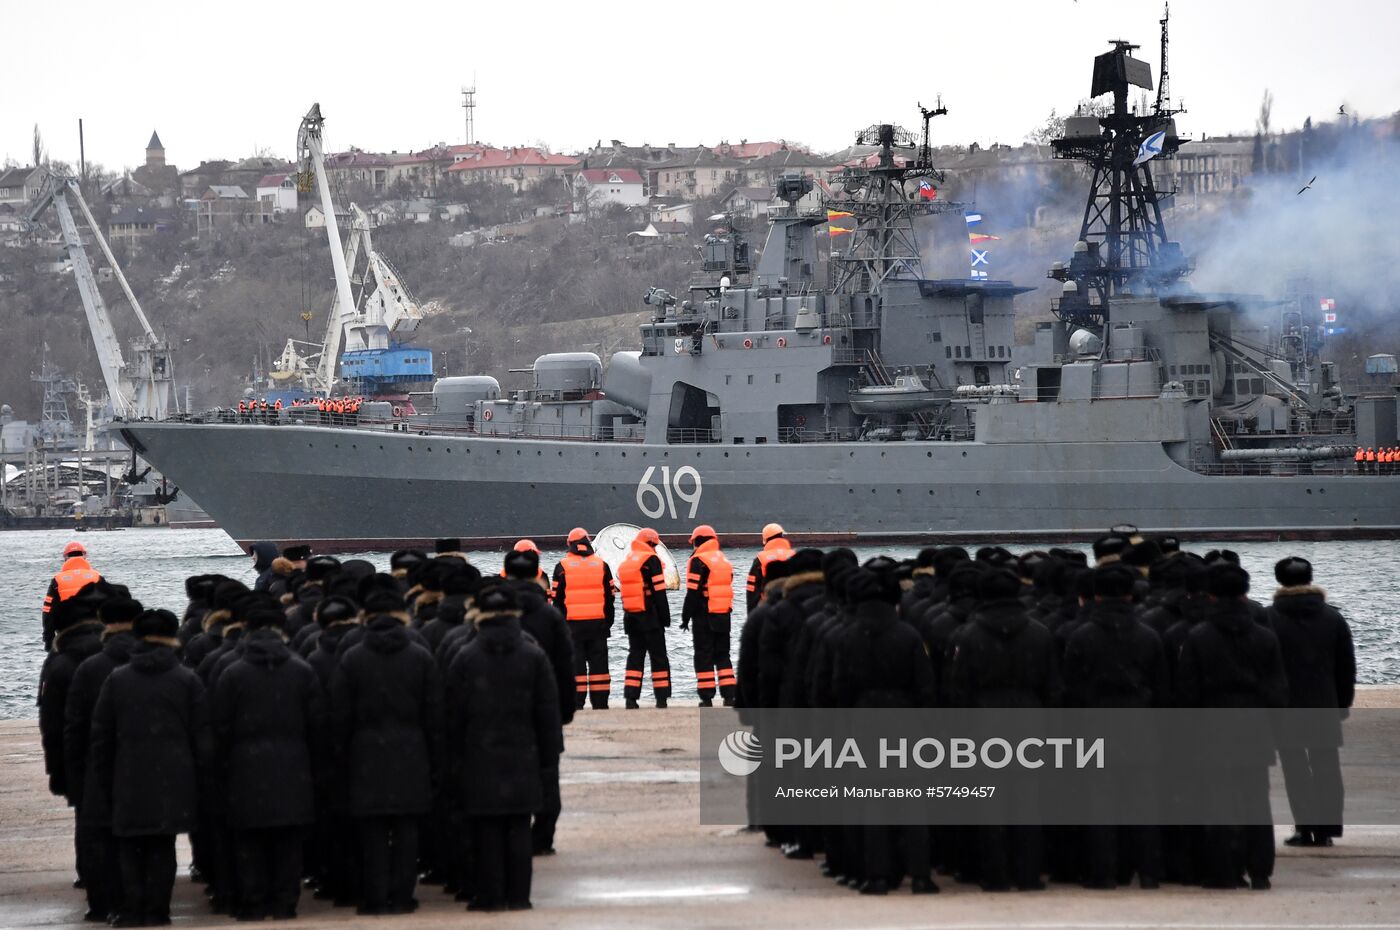 БПК "Североморск" прибыл в порт Севастополя